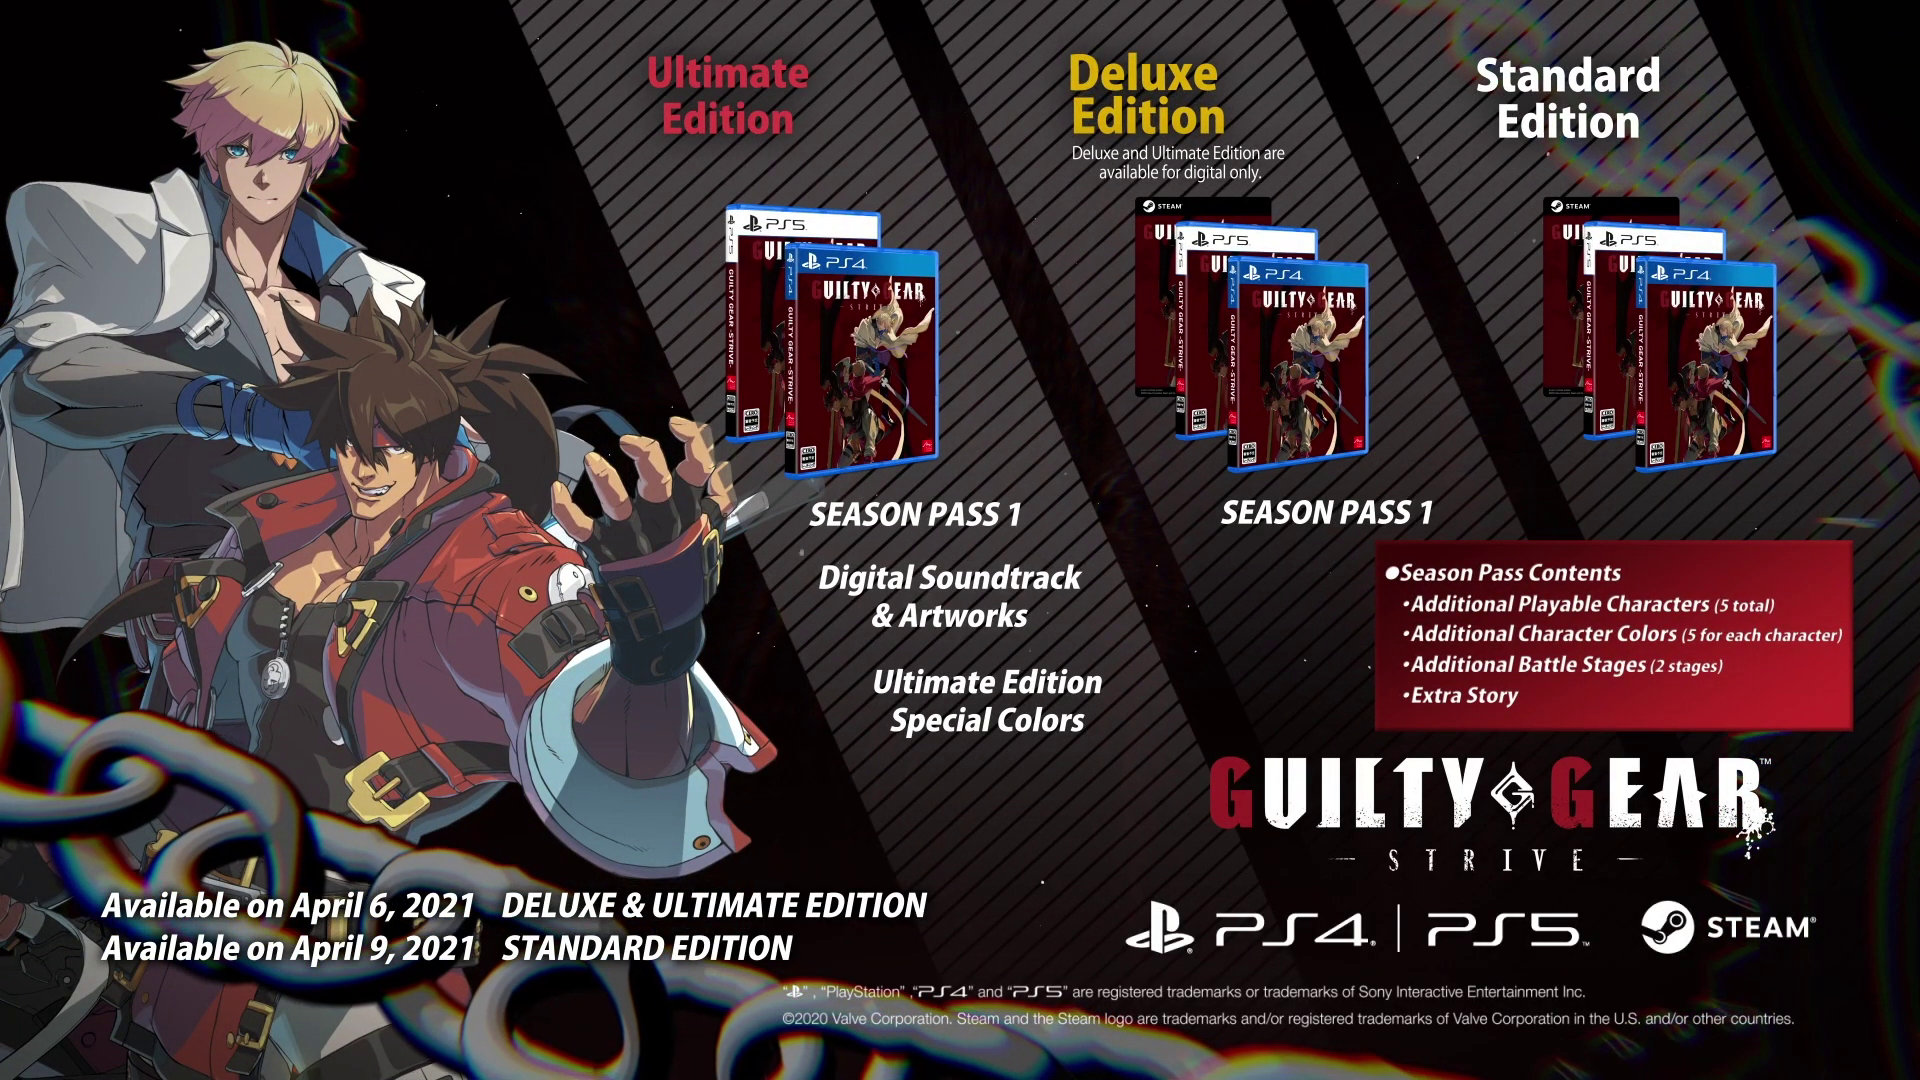 Crunchyroll - Guilty Gear: se lanzará en PS4, PS5 y PC vía Steam el 9 de abril de